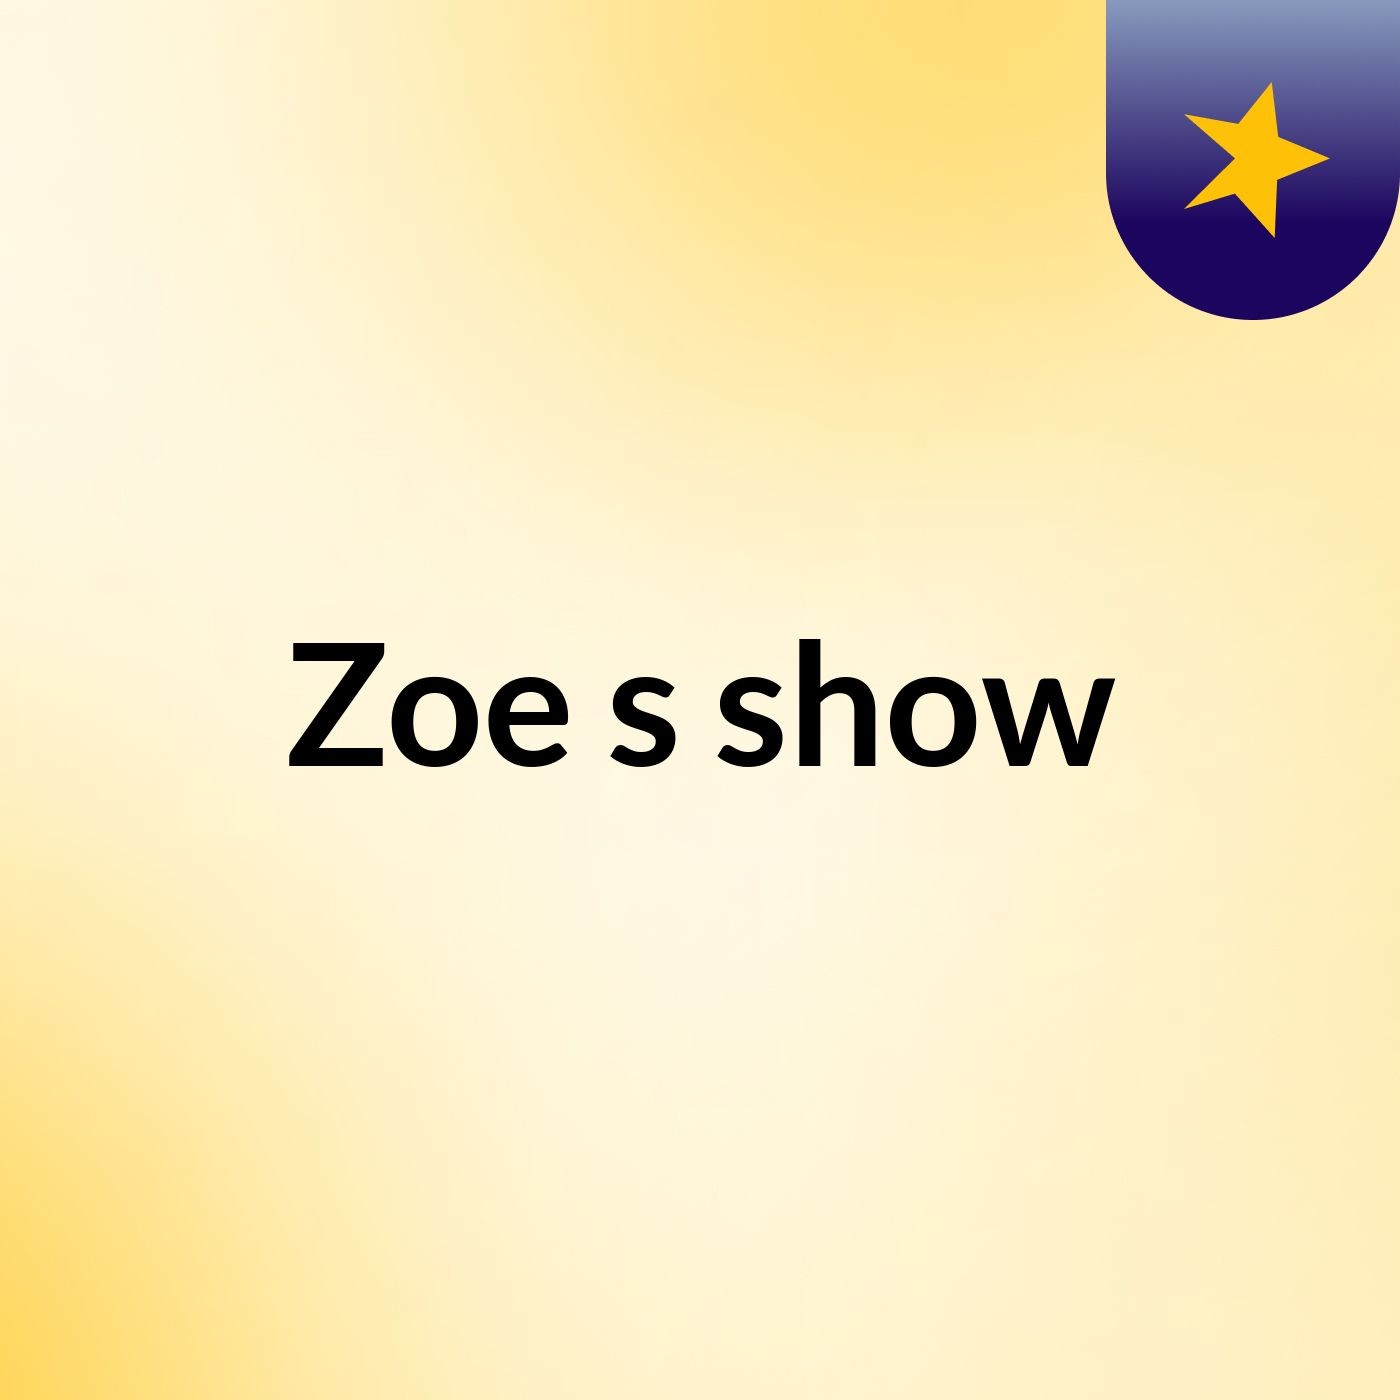 Zoe's show